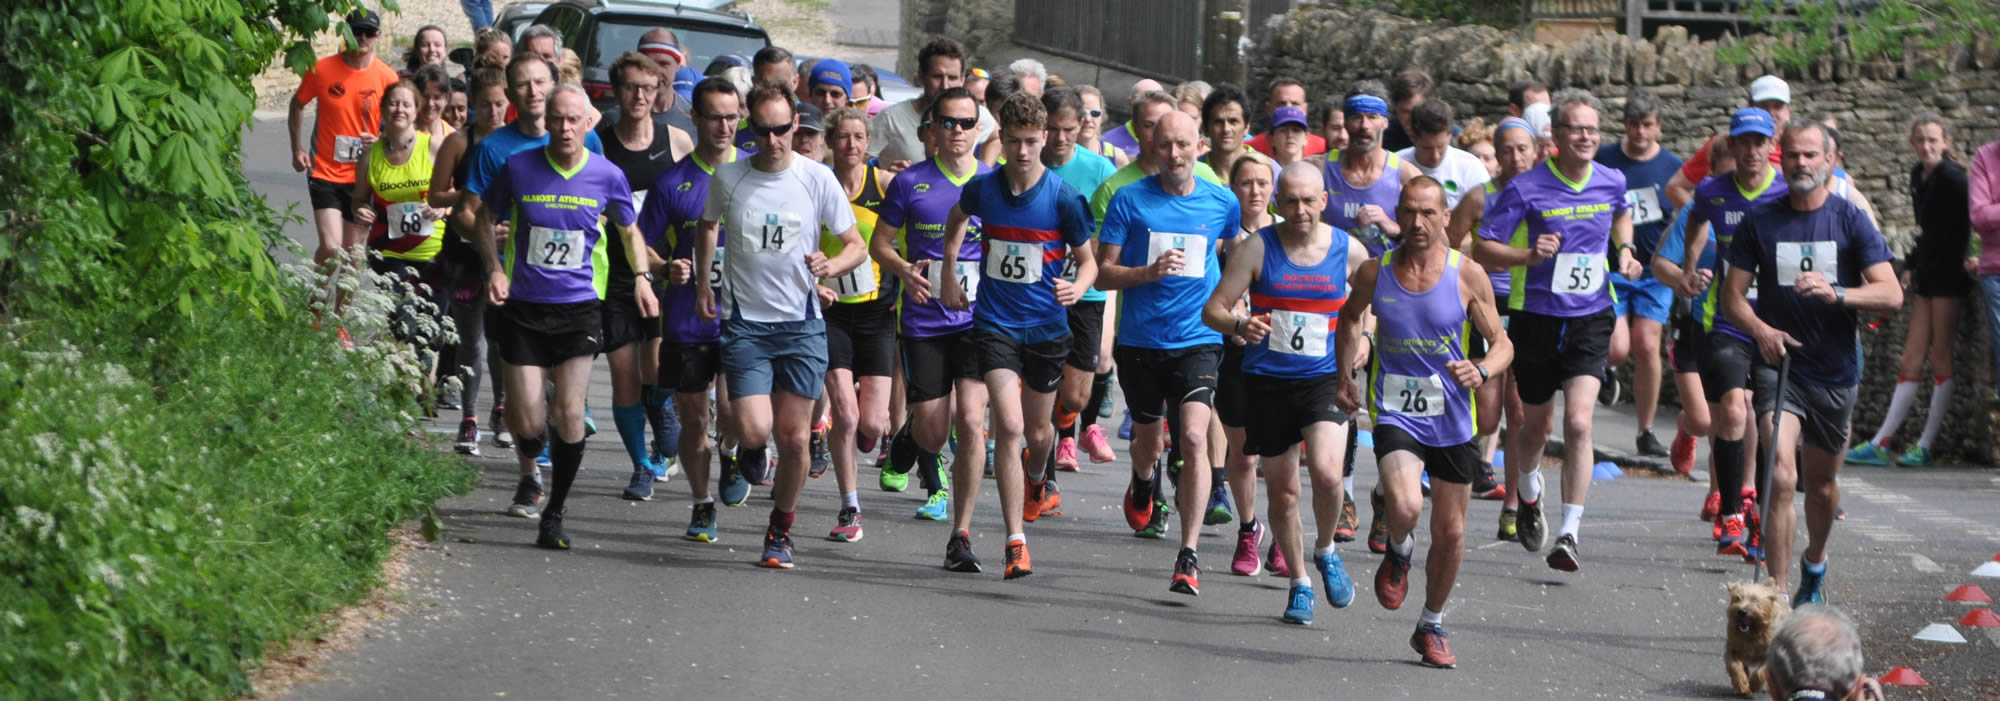 2019 London Marathon at 11k